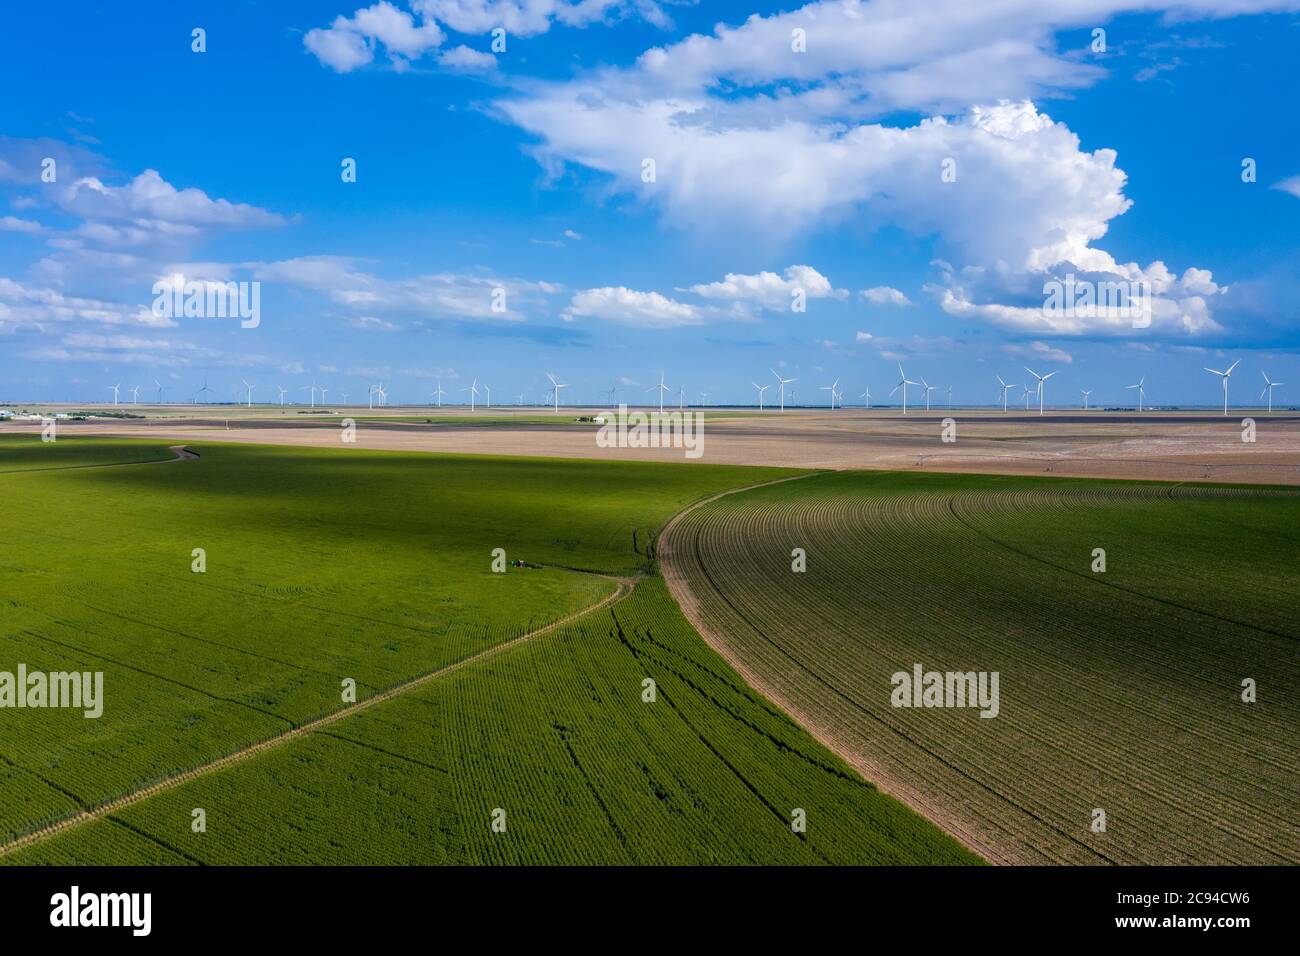 Ein Drohnenbild mit Blick auf eine neu wachsende Weizenernte mit Windmühlen im Hintergrund zeigt die klassische Szene der Great Plains im Mittleren Westen. Stockfoto